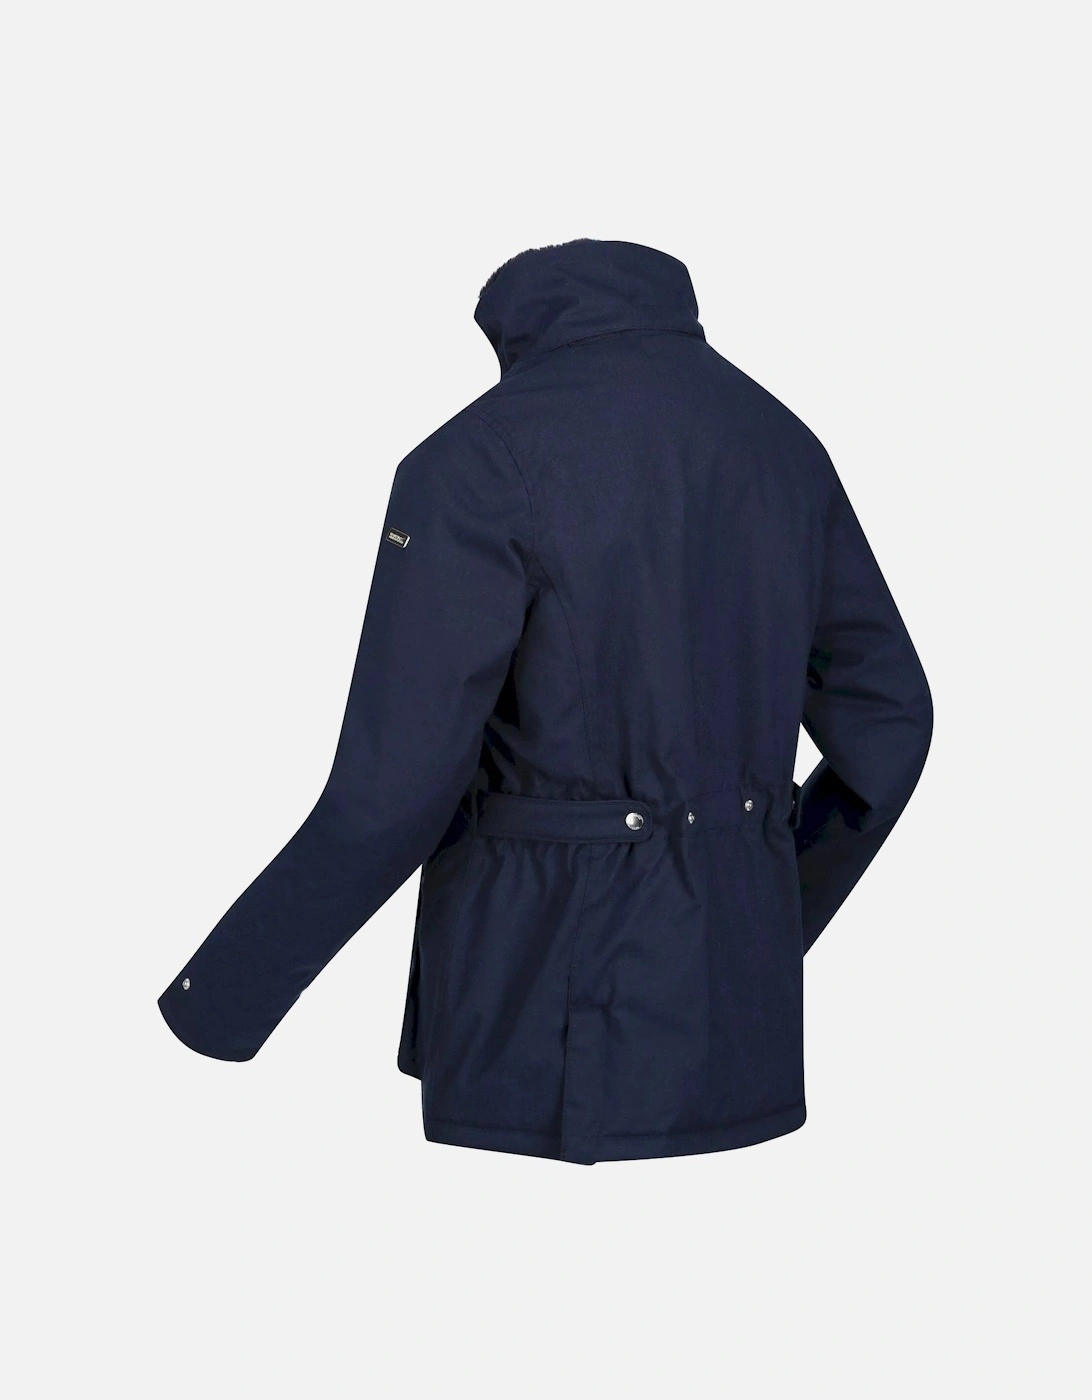 Womens/Ladies Leighton Waterproof Jacket